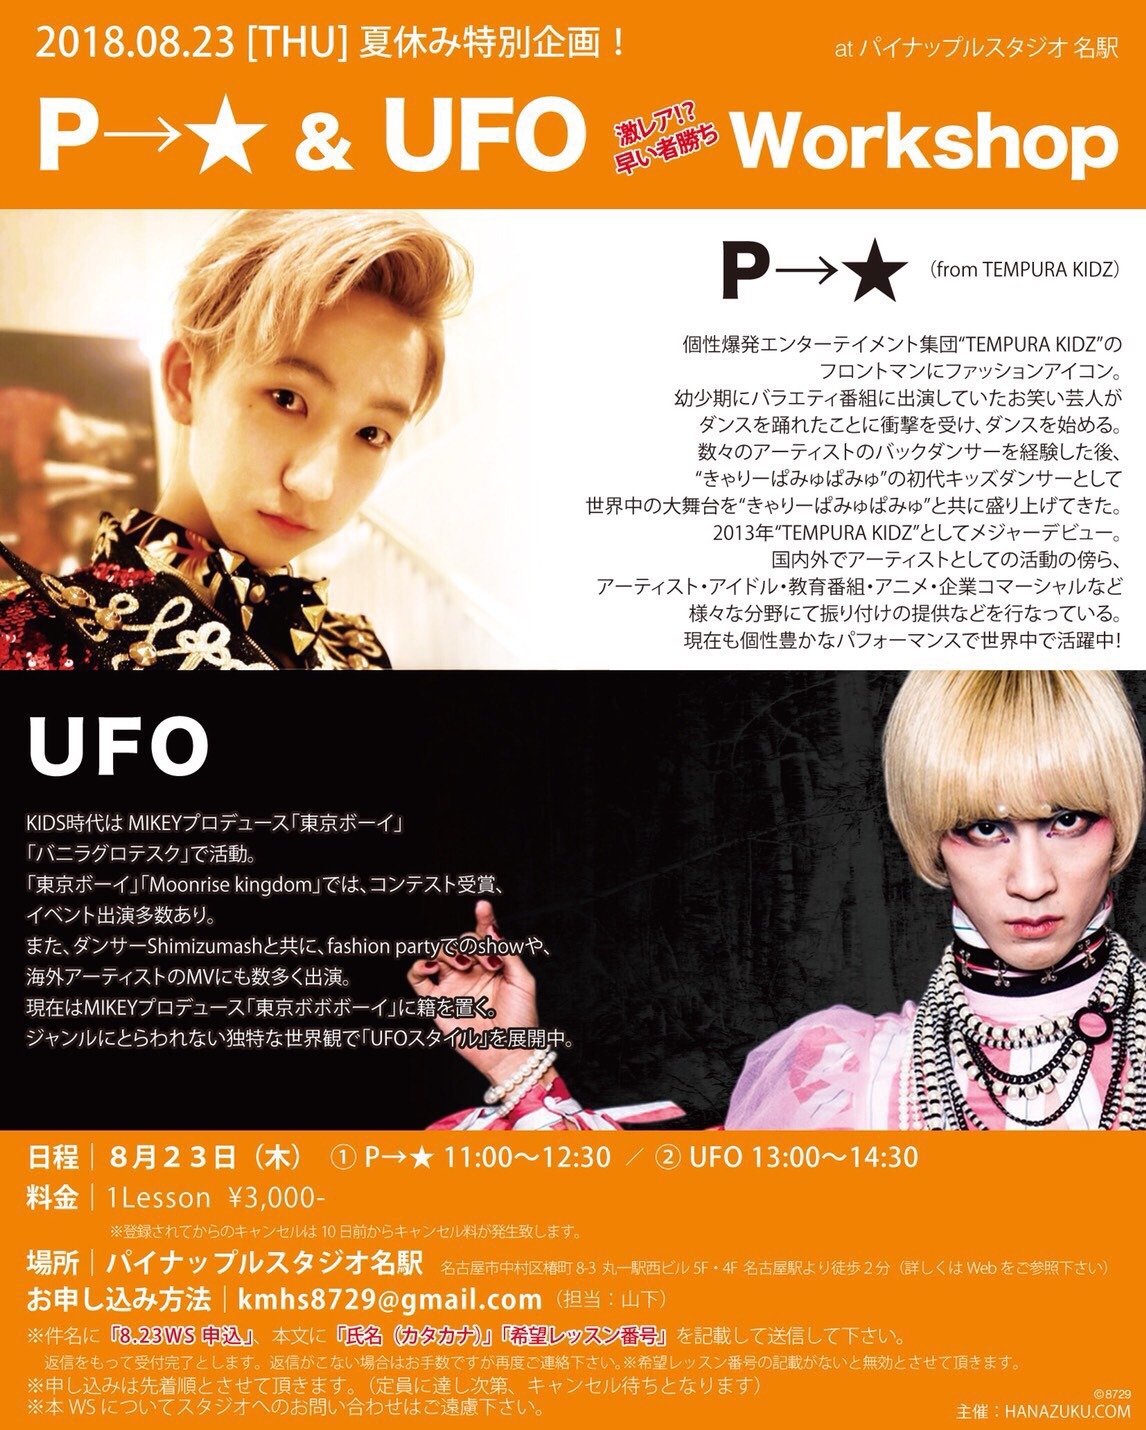 P→★＆UFOダンスワークショップ at 名古屋